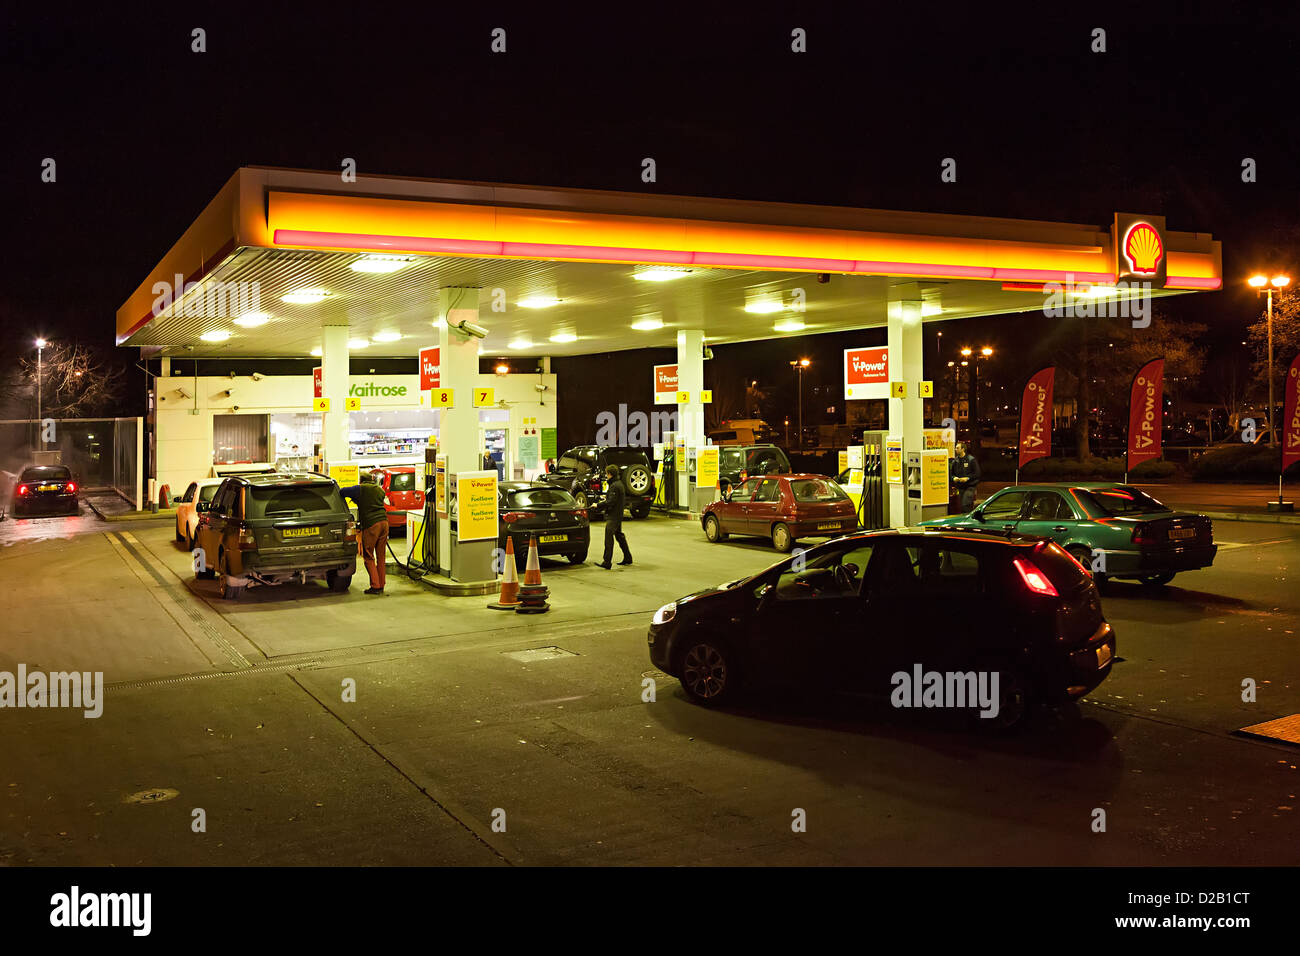 Station de remplissage d'essence au supermarché Waitrose dans la nuit, au Pays de Galles, Royaume-Uni Banque D'Images